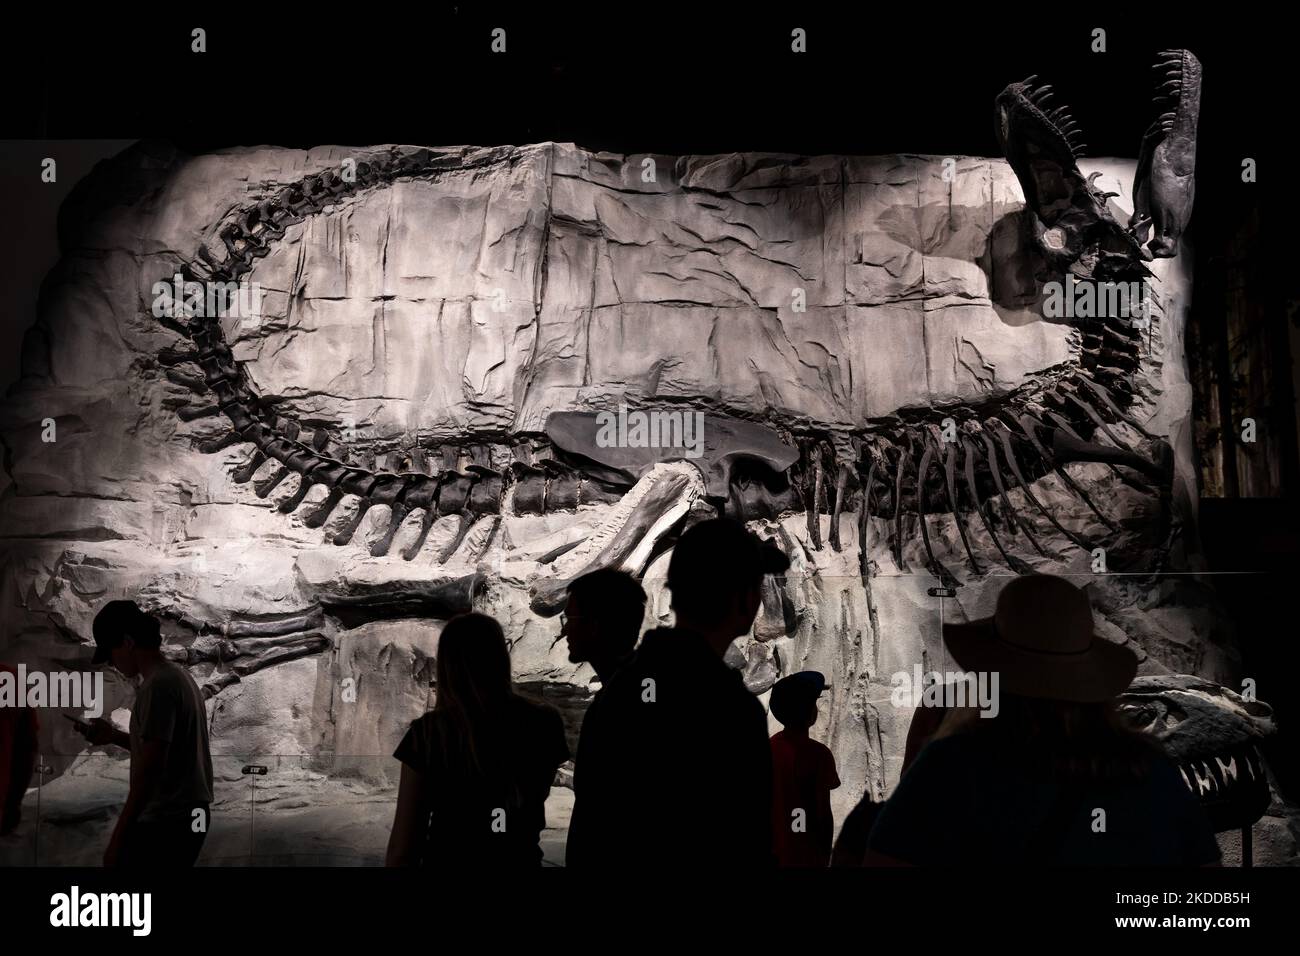 Squelettes de dinosaures et silhouettes de touristes, Royal Tyrrell Museum, Drumheller, Alberta, Canada. Banque D'Images